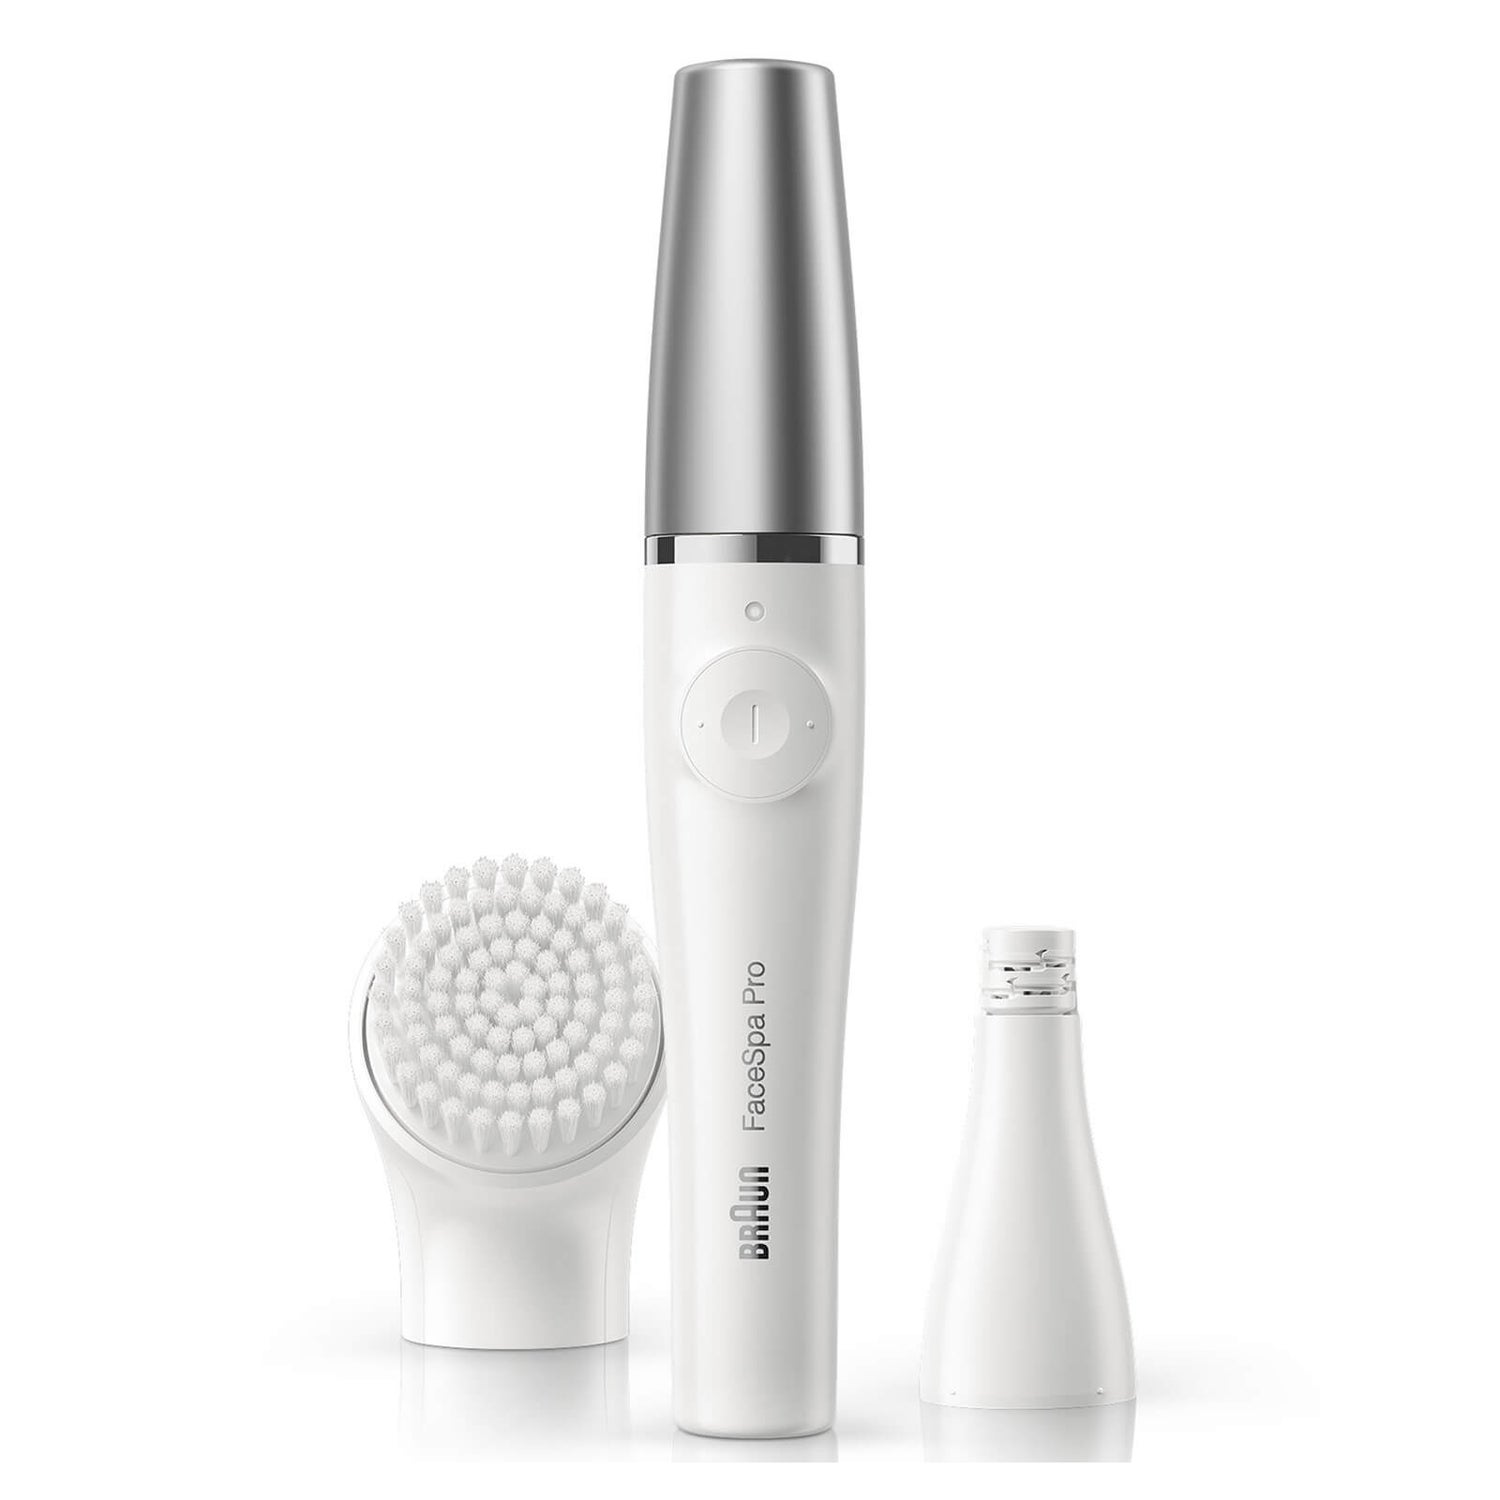 Braun FaceSpa Pro SE910 2-in-1 Beauty-Gerät zur Gesichts-Epilation, weiß/silber